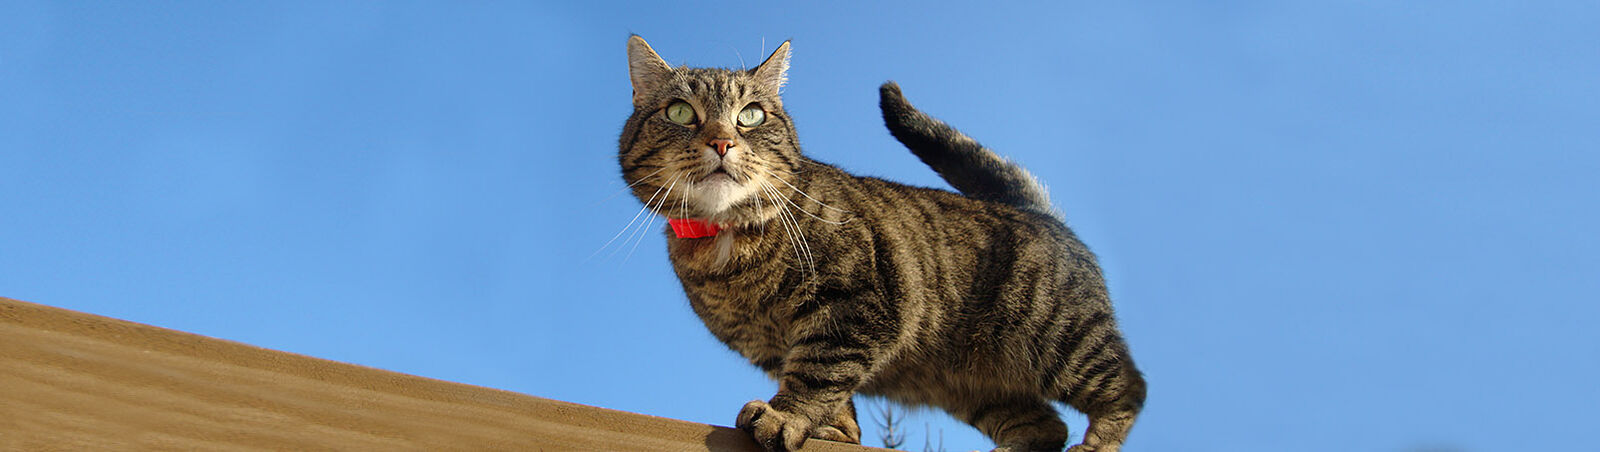 Katze steht vor Himmel auf Dach.